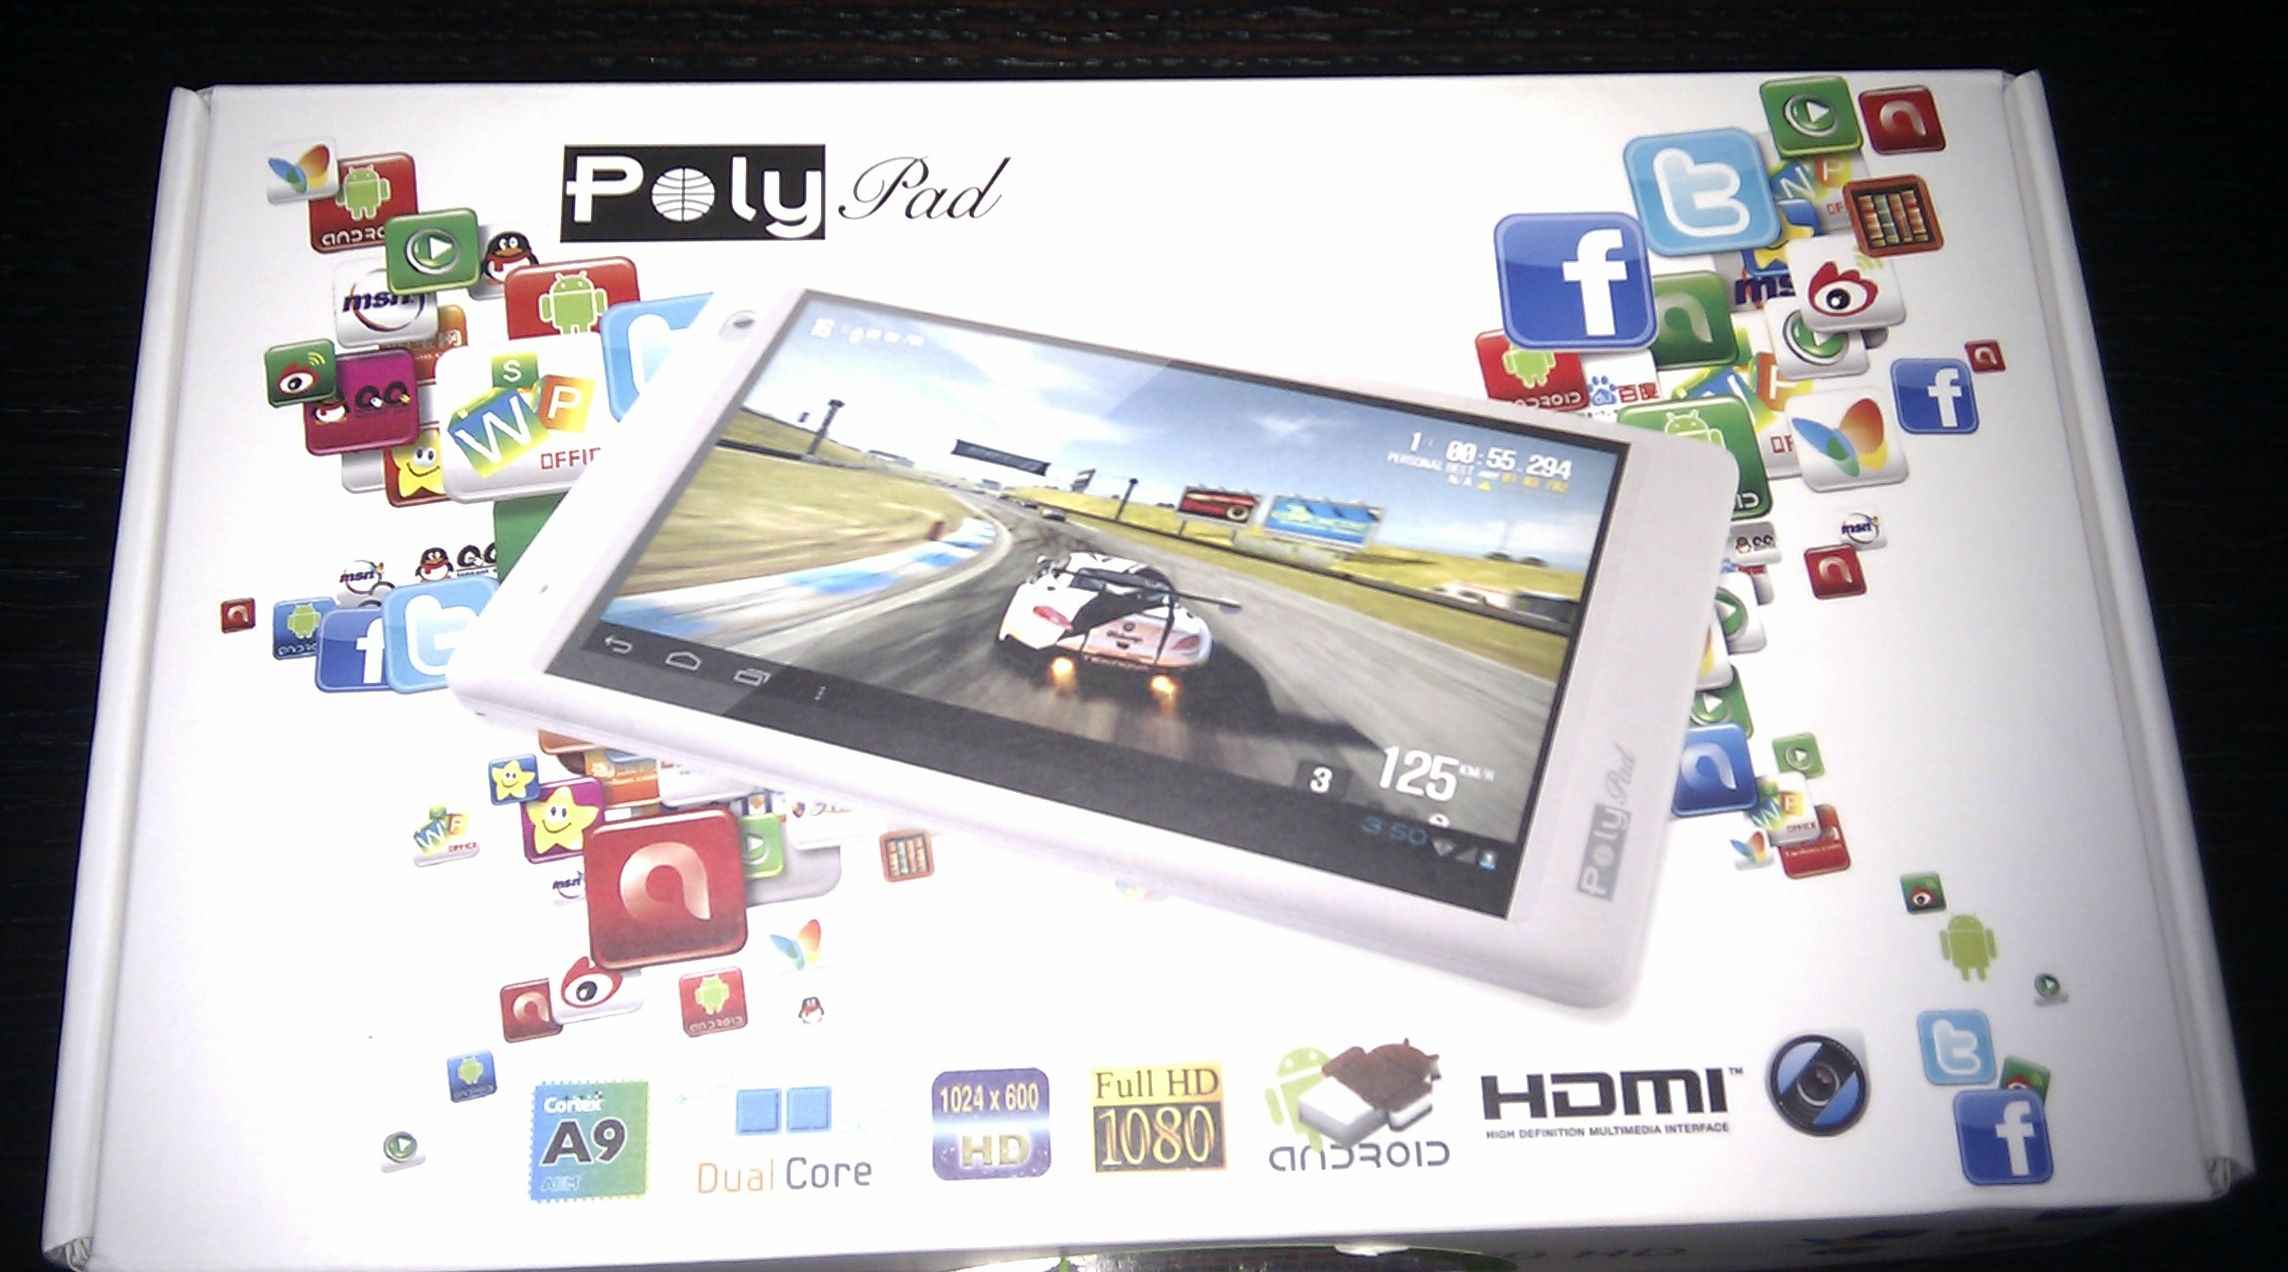  PolyPad 7200 & 7208 HD Kullanıcıları Kulübü (Ana Konu)